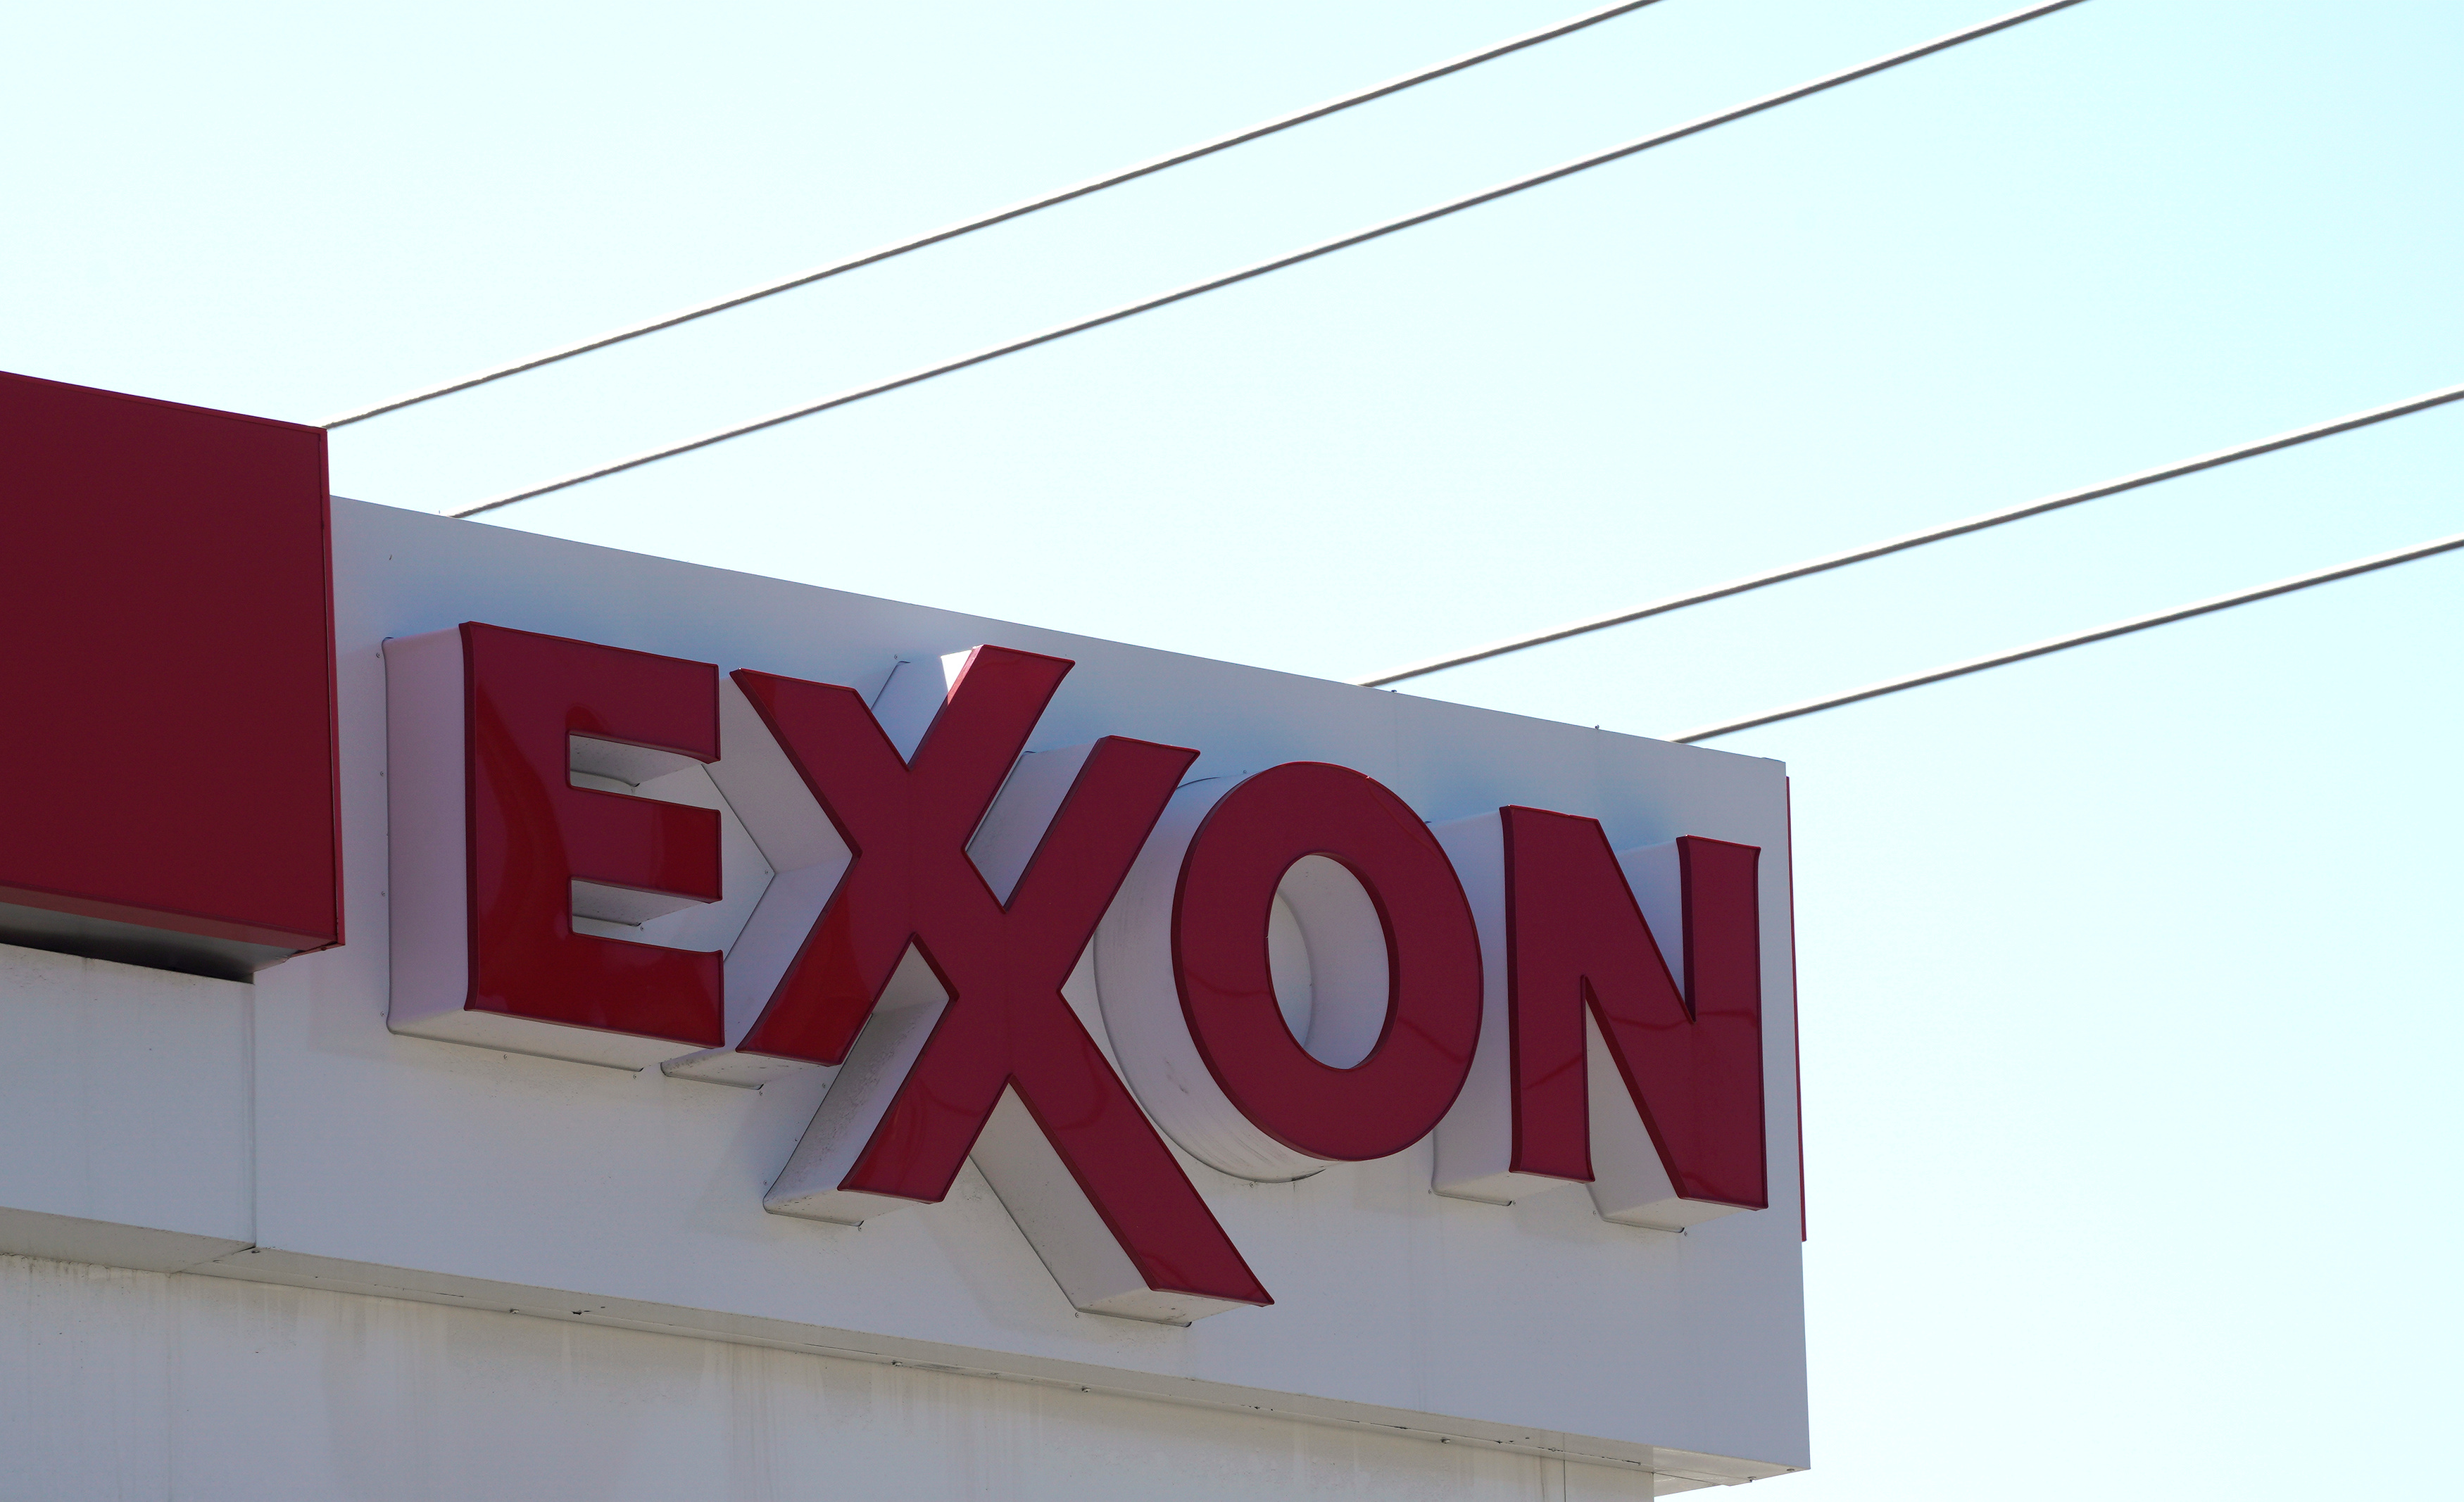 Guyana y Exxon en “conversaciones” tras disputa con Venezuela por intercepción de buques